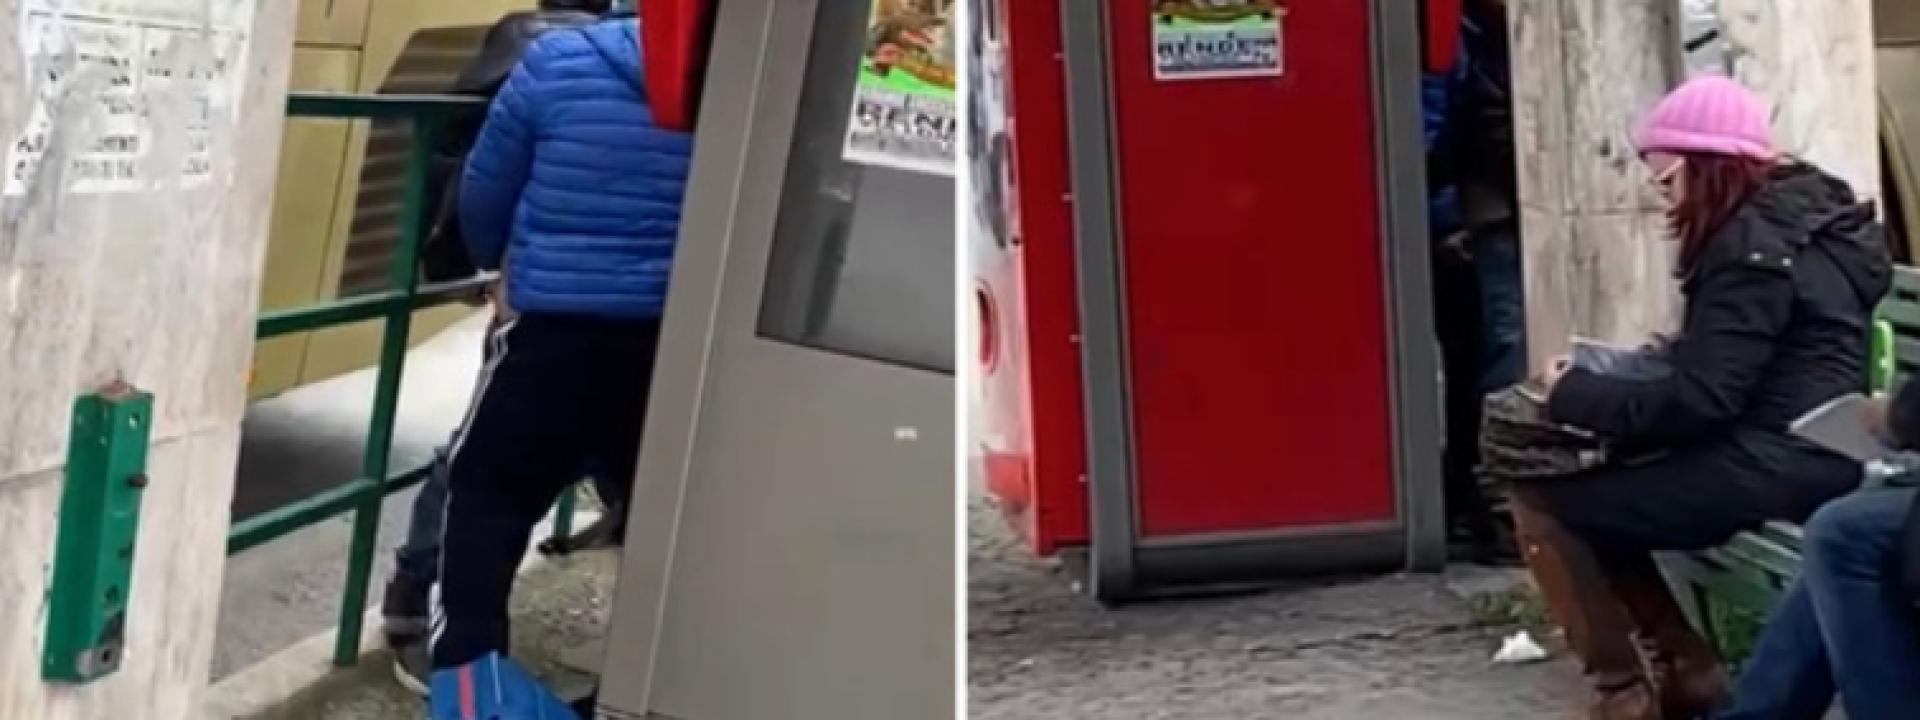 Due uomini fanno sesso alla fermata del bus sotto gli occhi dei passanti: il video diventa virale